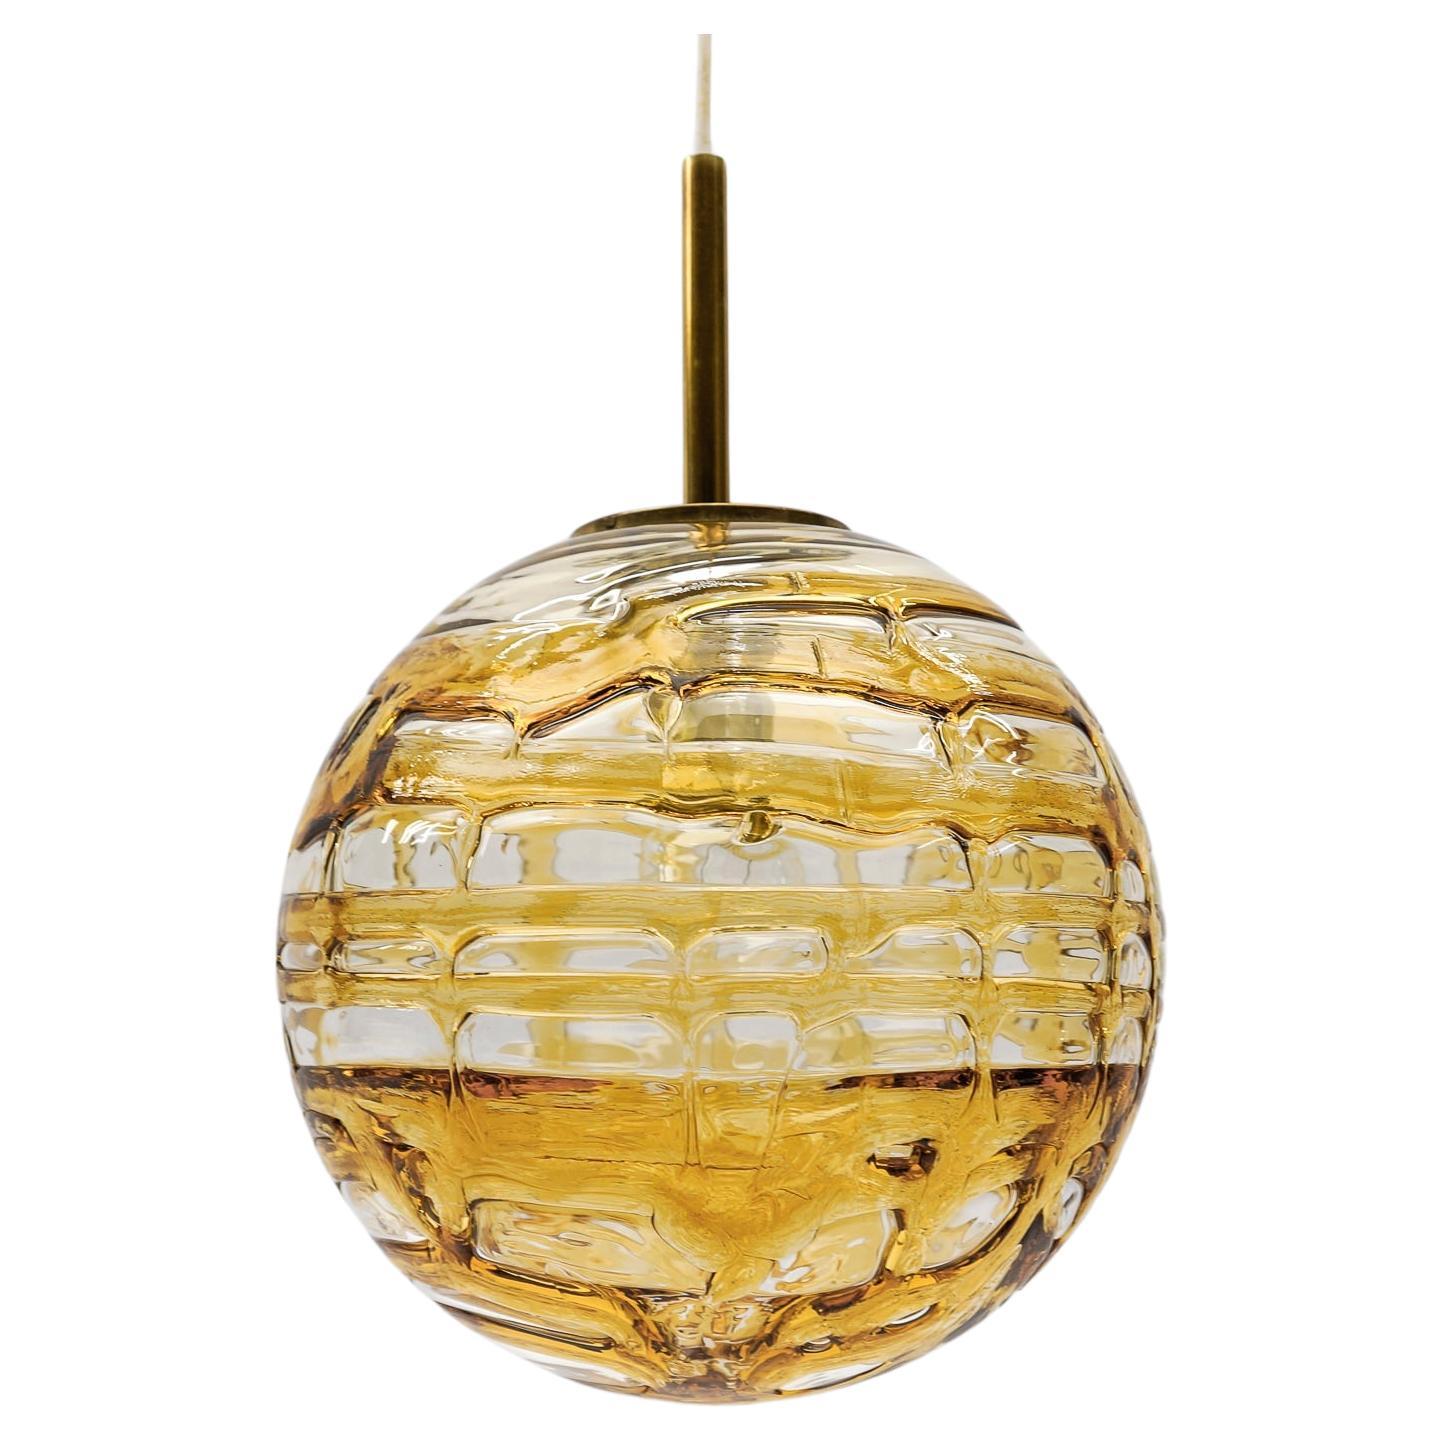 Schöne gelbe Murano Glas Kugel Pendelleuchte von Doria, - 1960er Jahre Deutschland